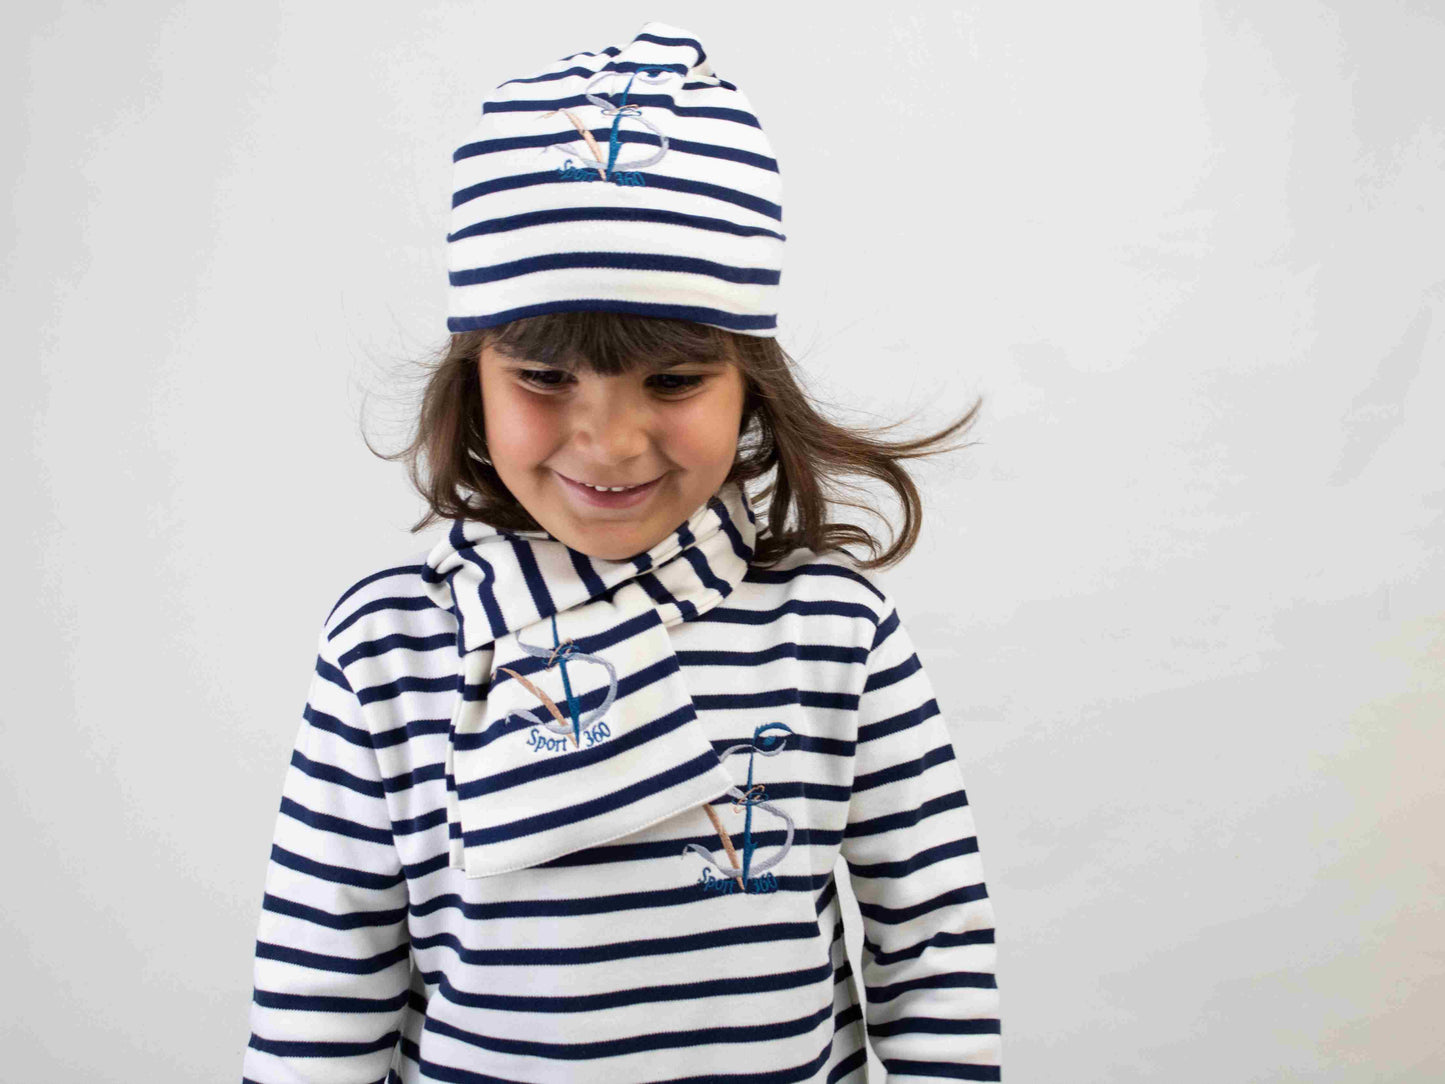 SportV360™: Echarpe, Bonnet, T-shirt à rayures en Coton pour Enfant, Marinière traditionnelle, Environnement